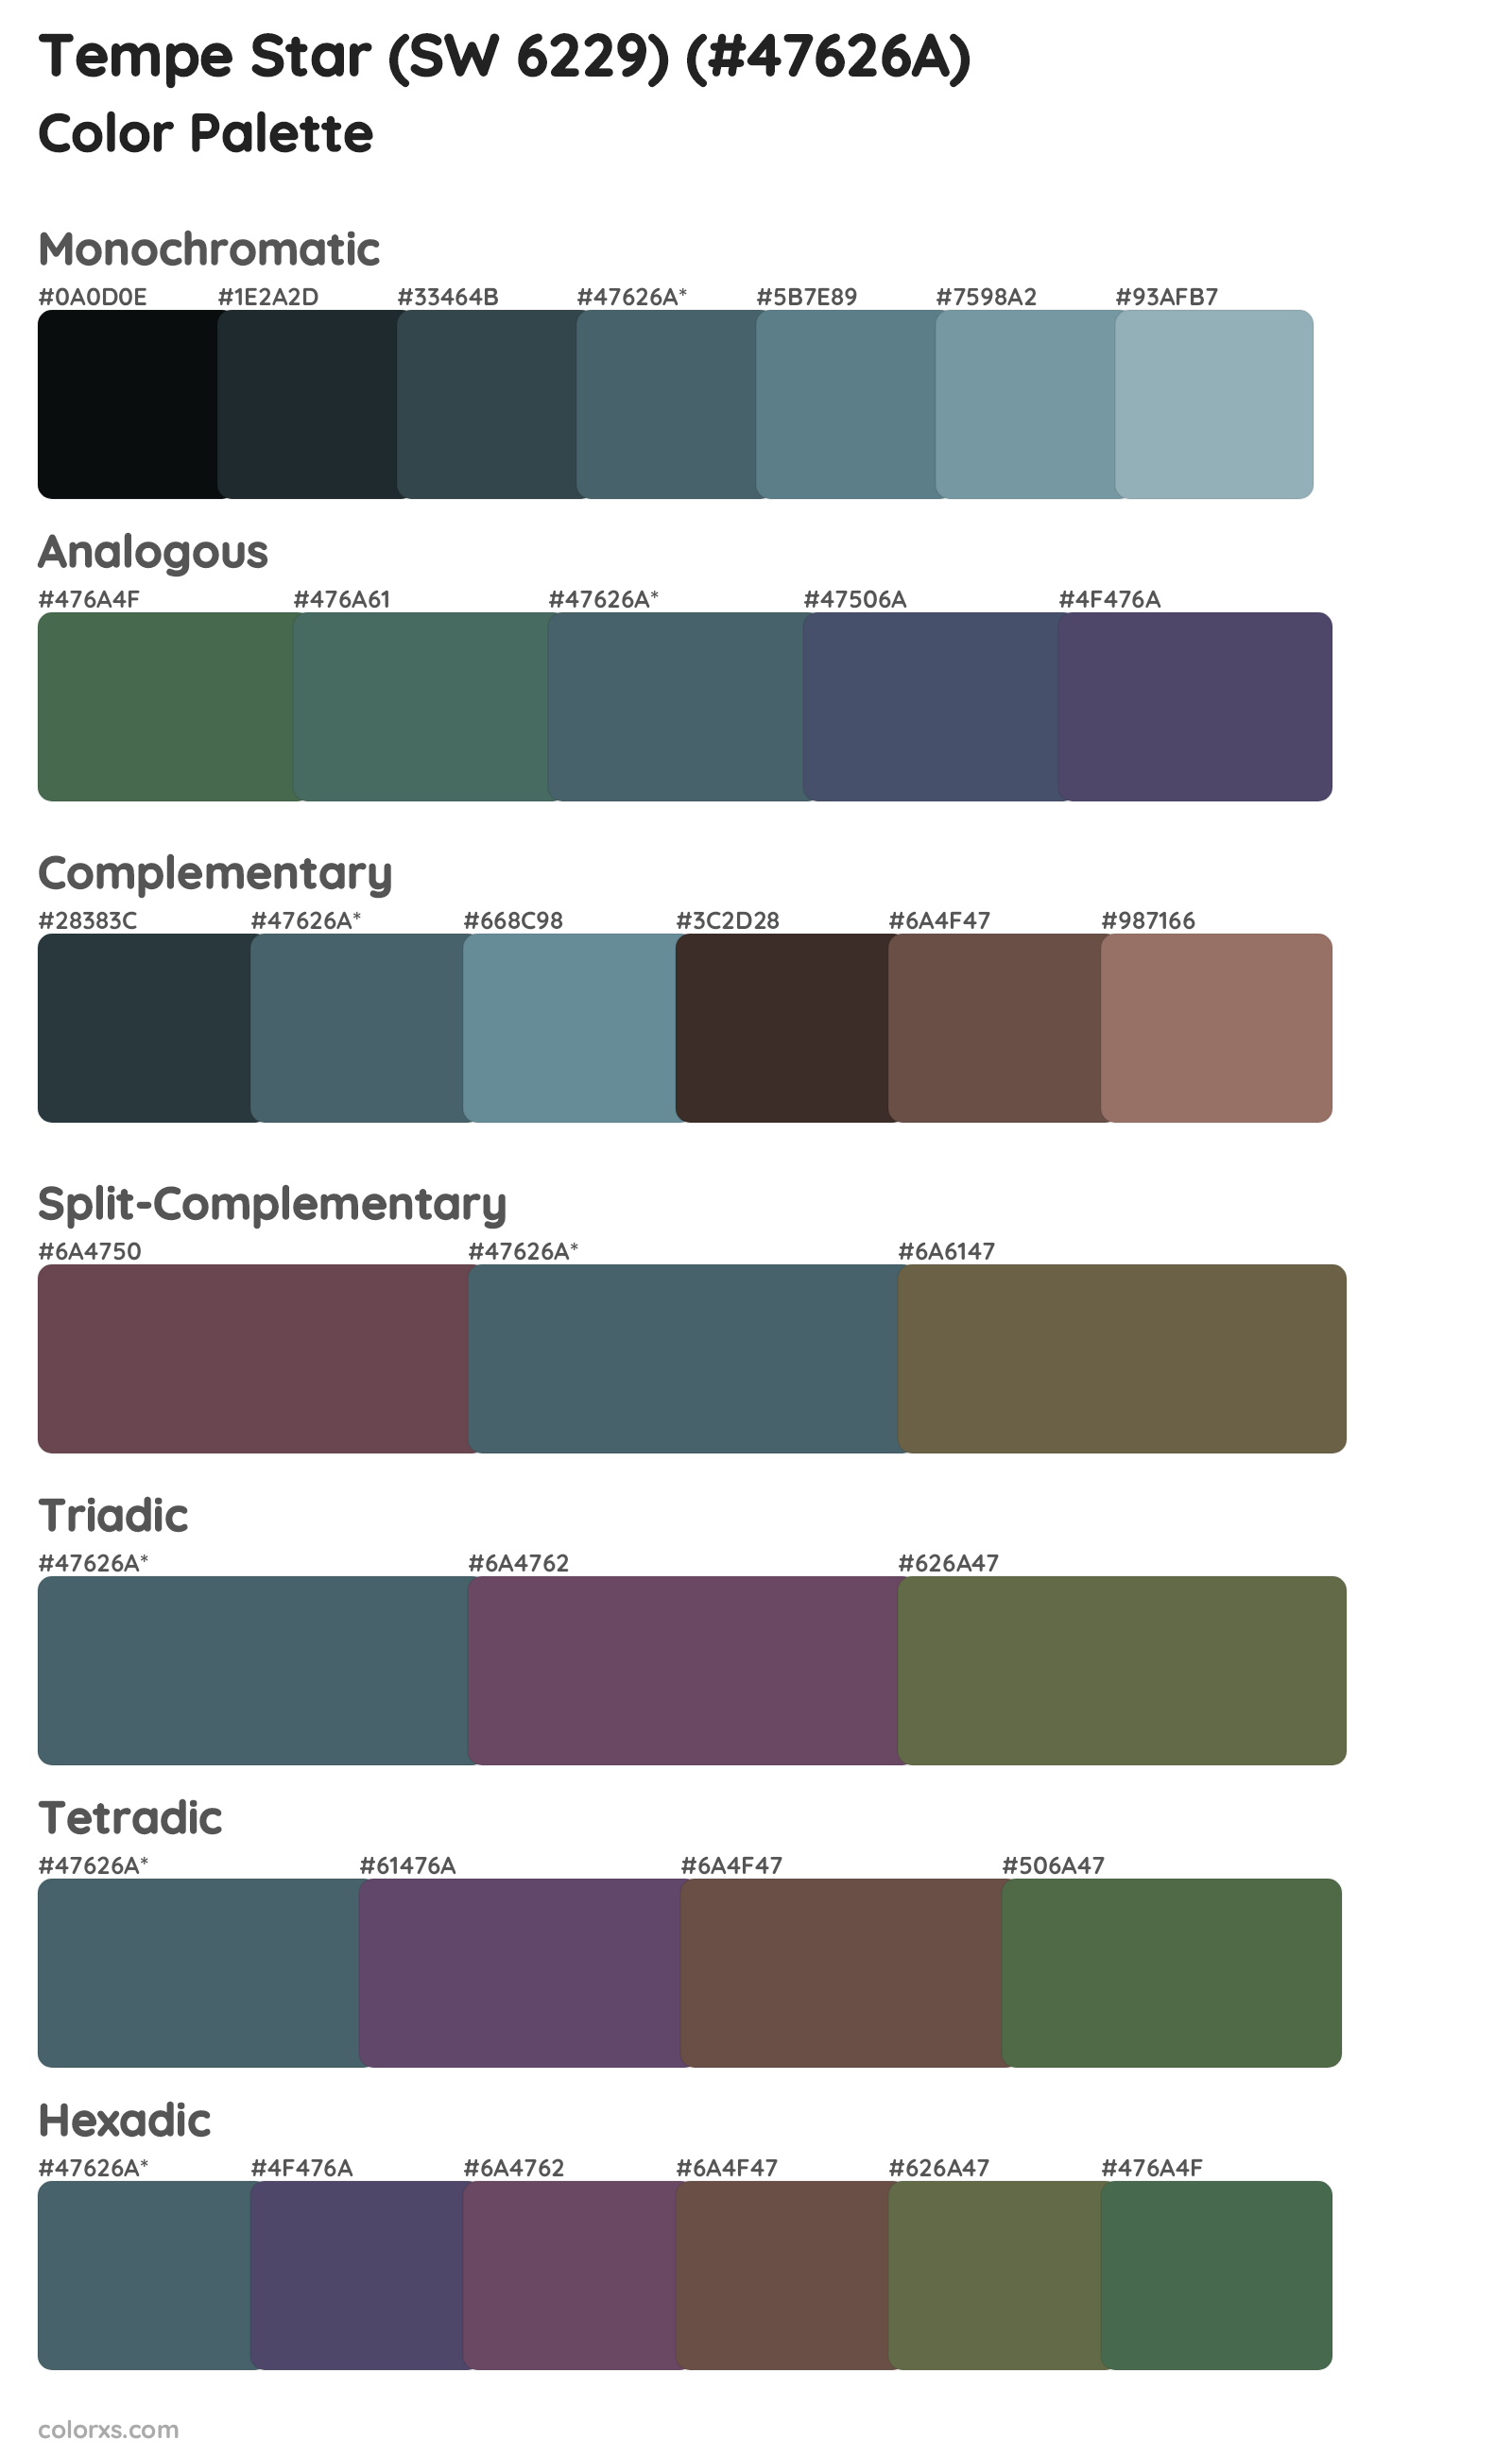 Tempe Star (SW 6229) Color Scheme Palettes